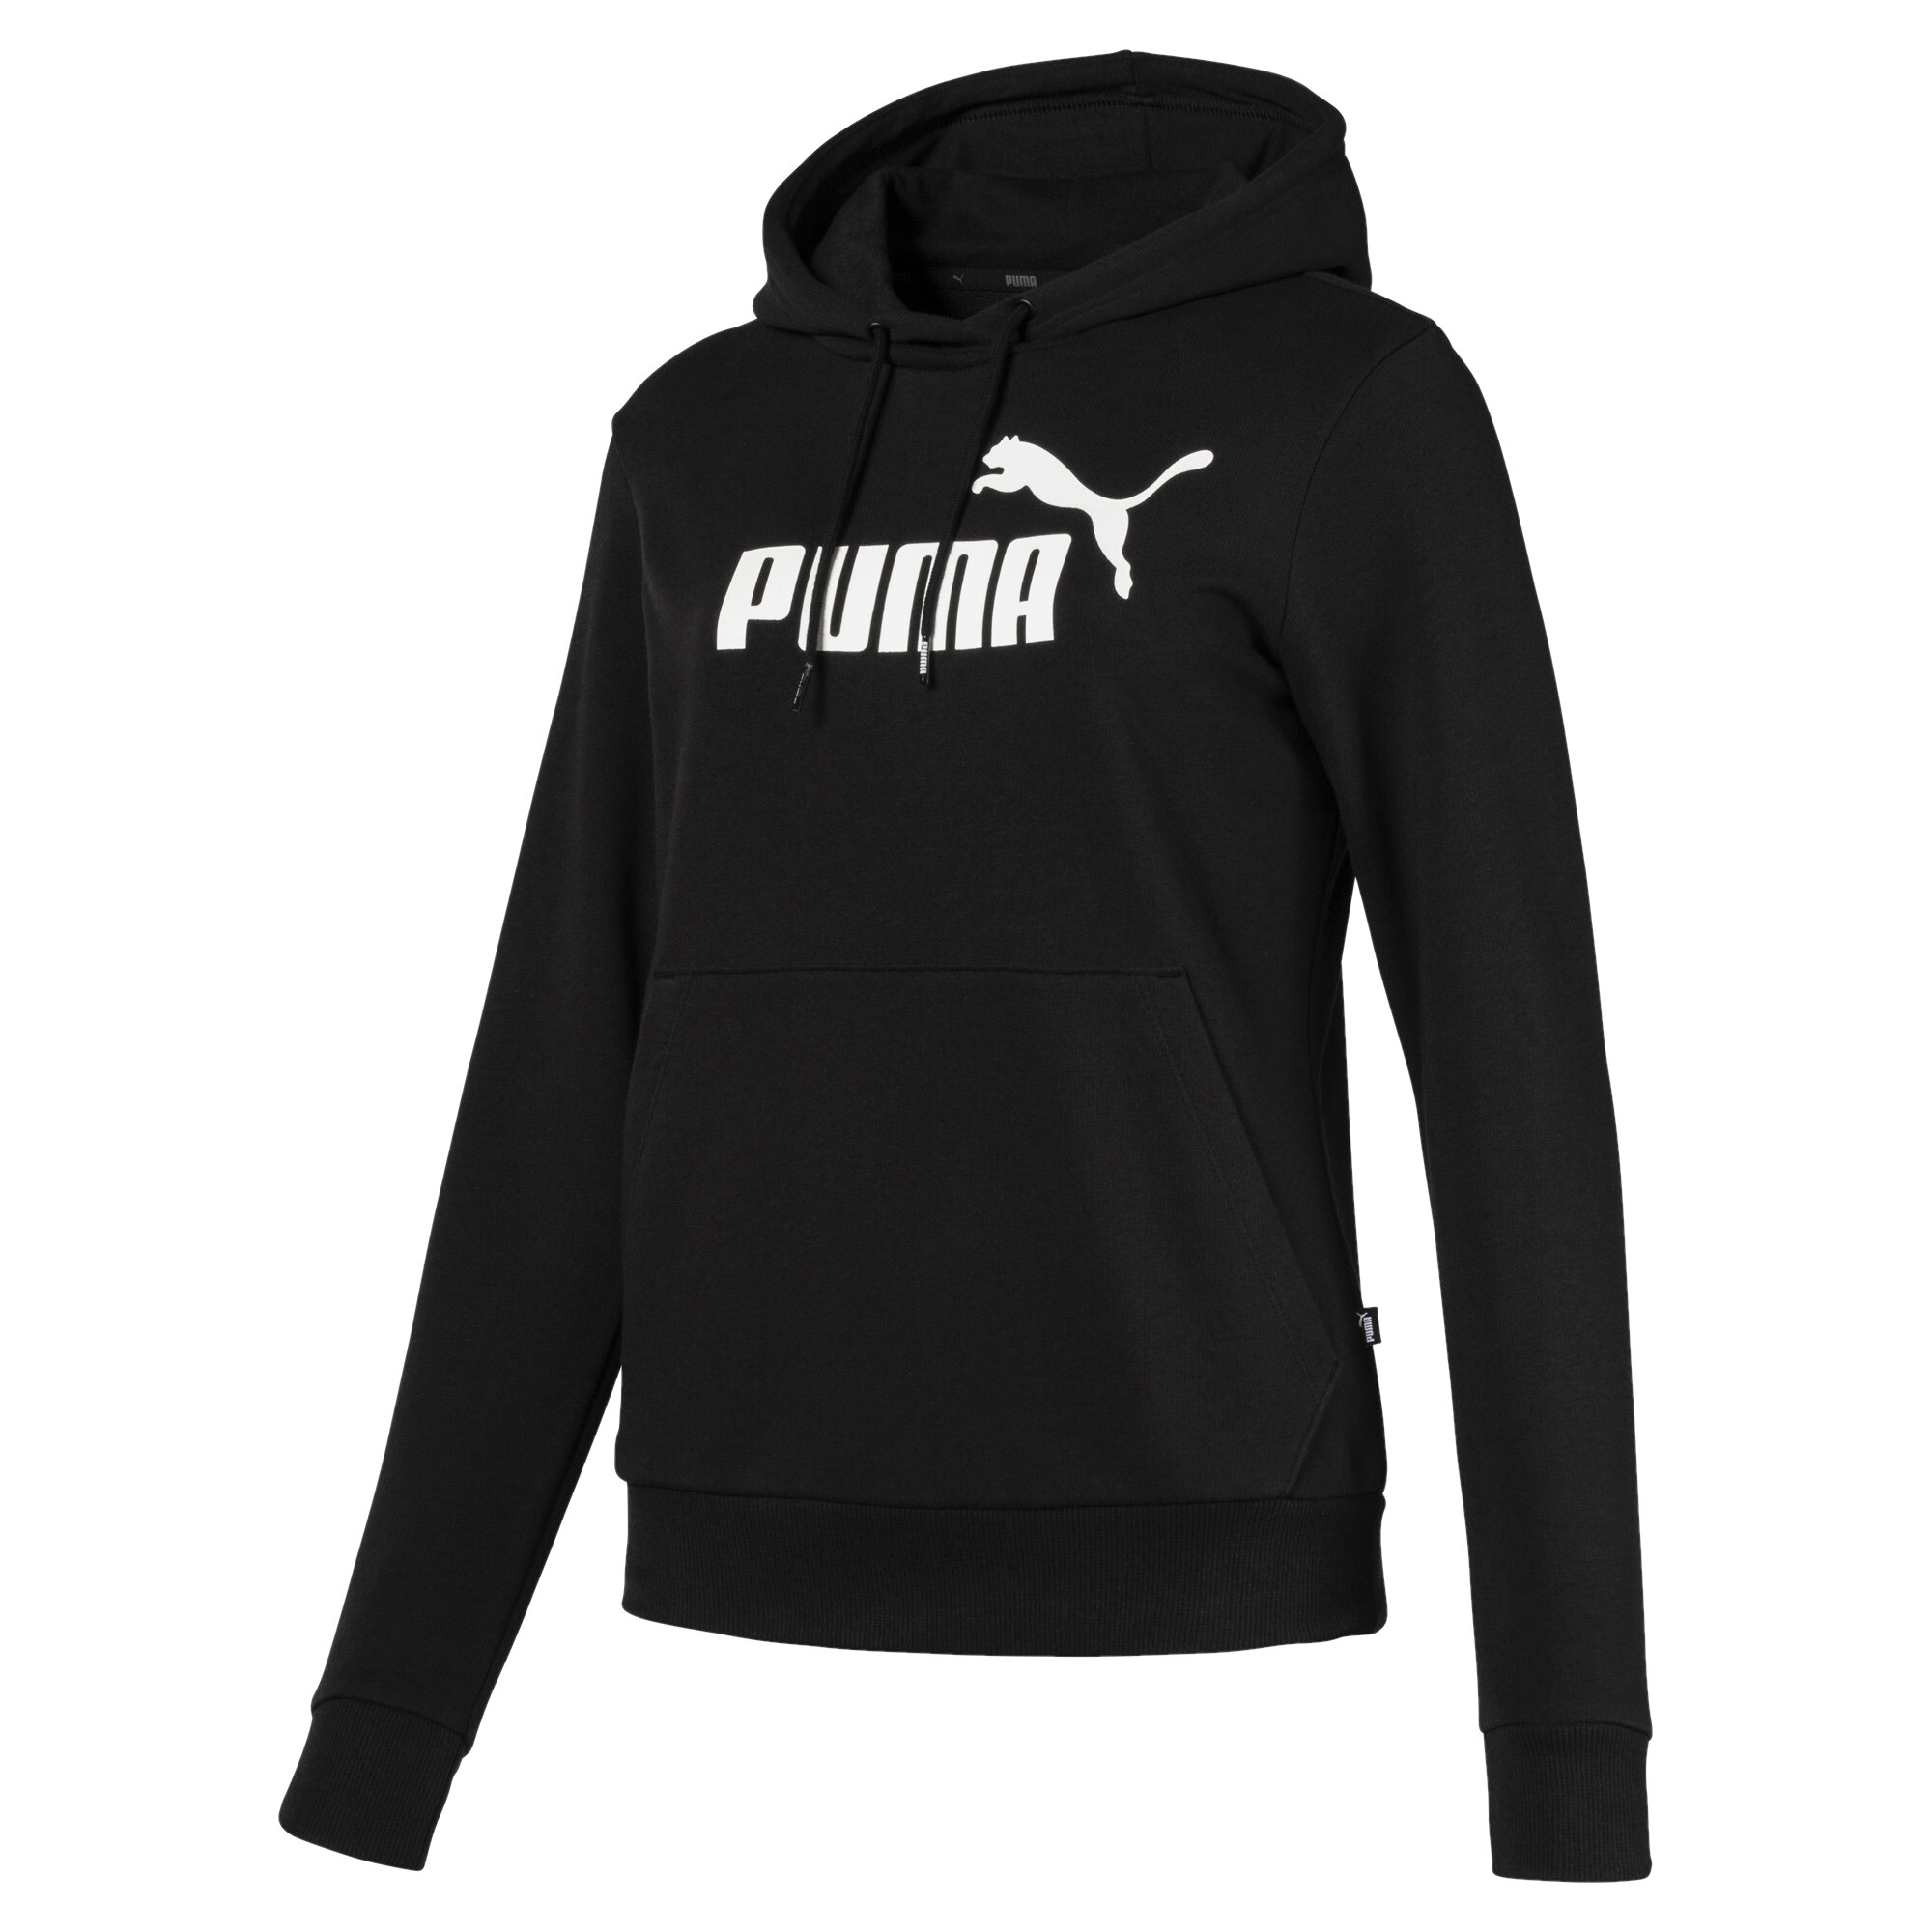 puma sweater price